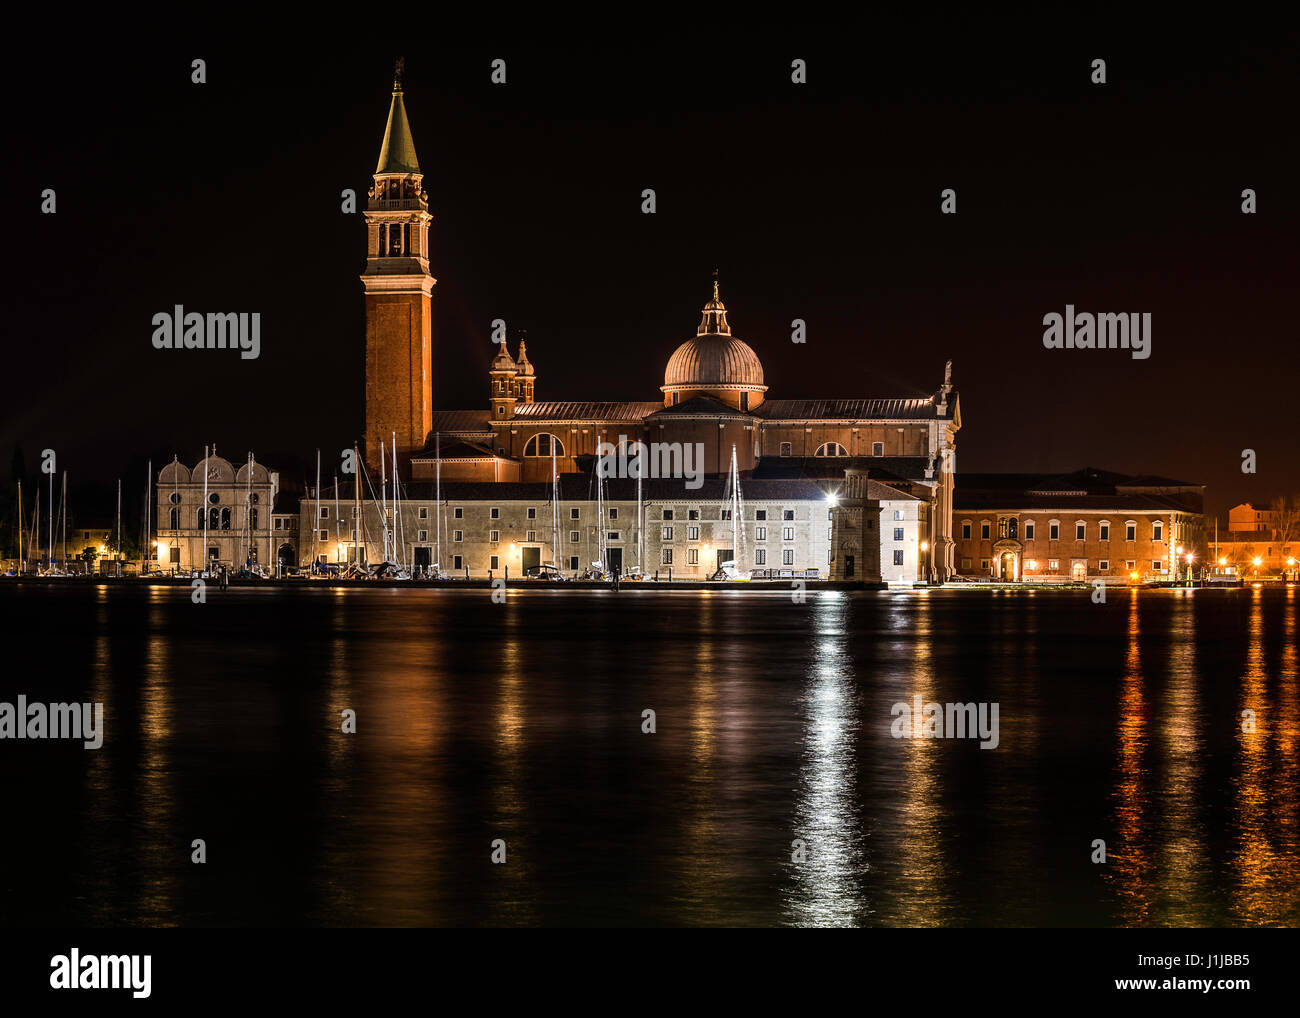 Nuit longue exposition de l'image Isloa di San Giorgio Maggiore dans tout le bassin San Marco, Venise, Italie Banque D'Images